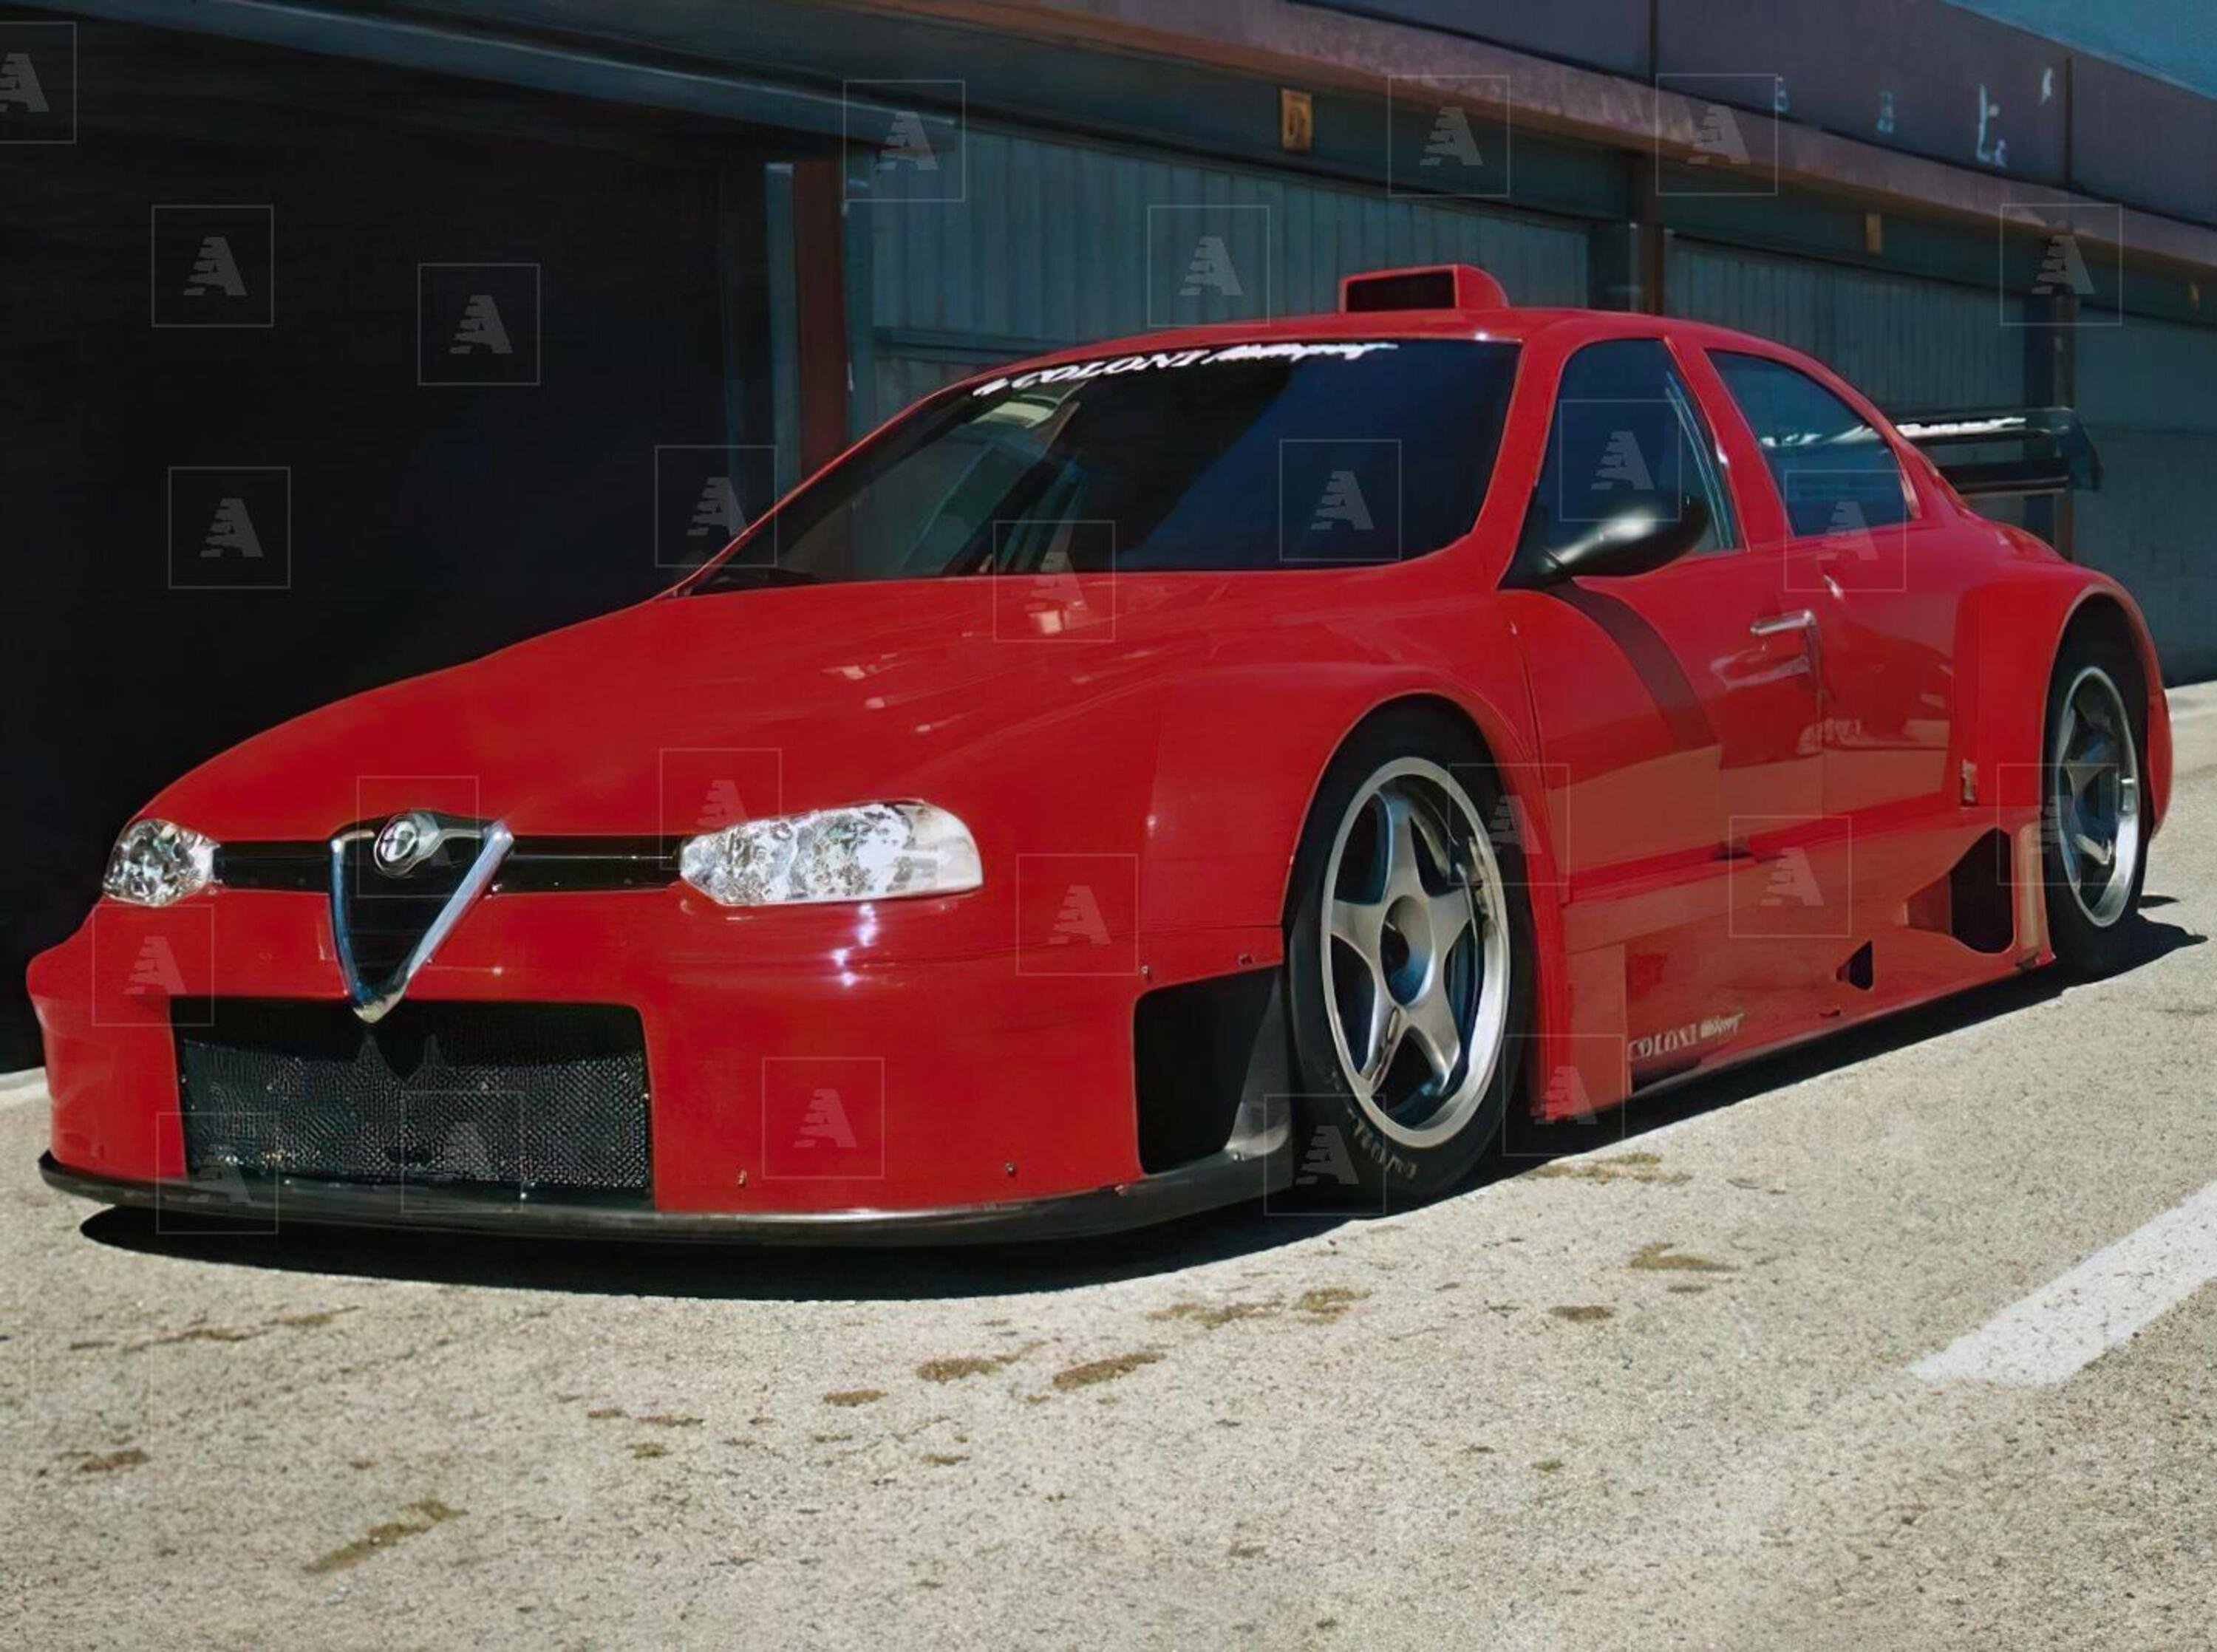 Alfa Romeo 156 Coloni S1: Maxiturismo con 0-100 in 2s in stile 164 ProCar [VIDEO]